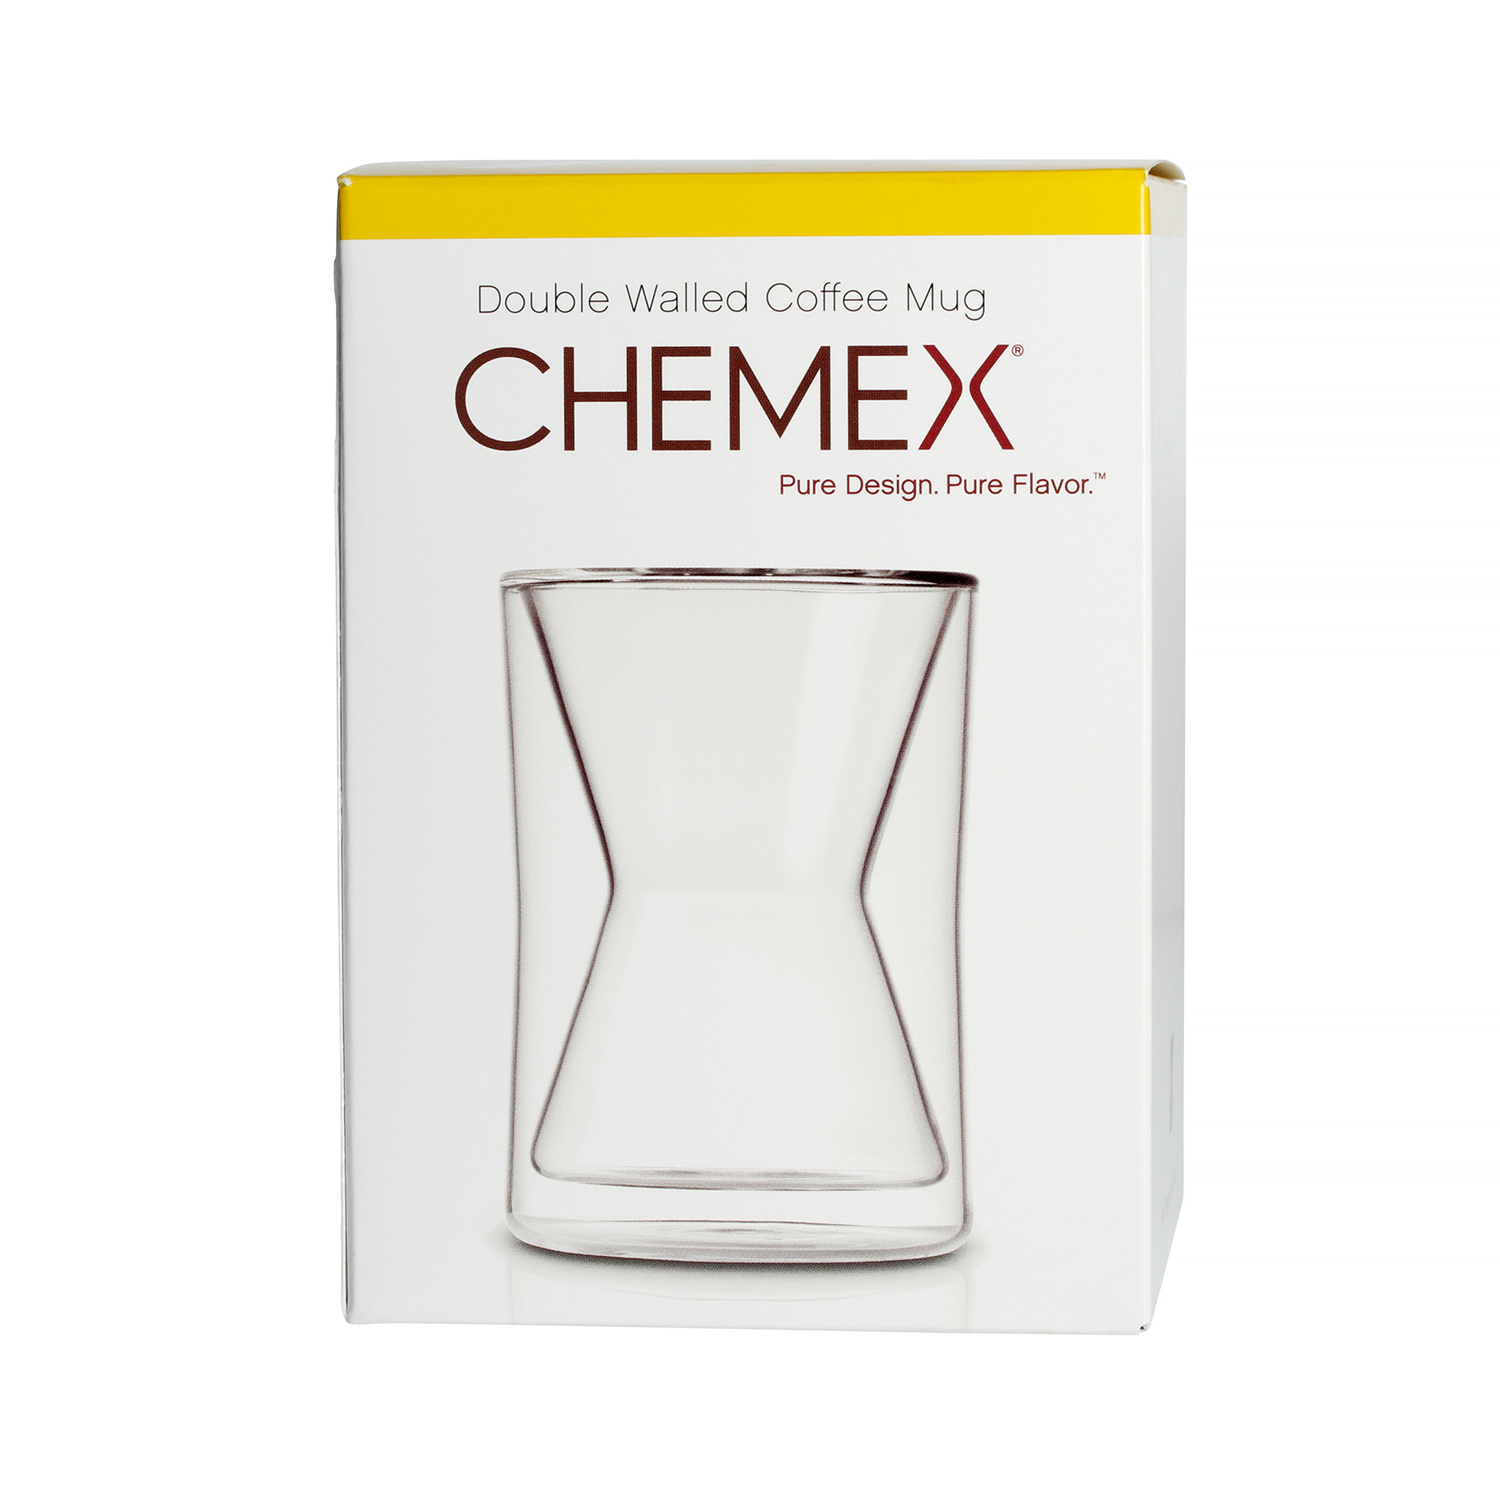 Chemex Double Walled Coffee Mug Kubek 300ml/10oz - Coffeedesk